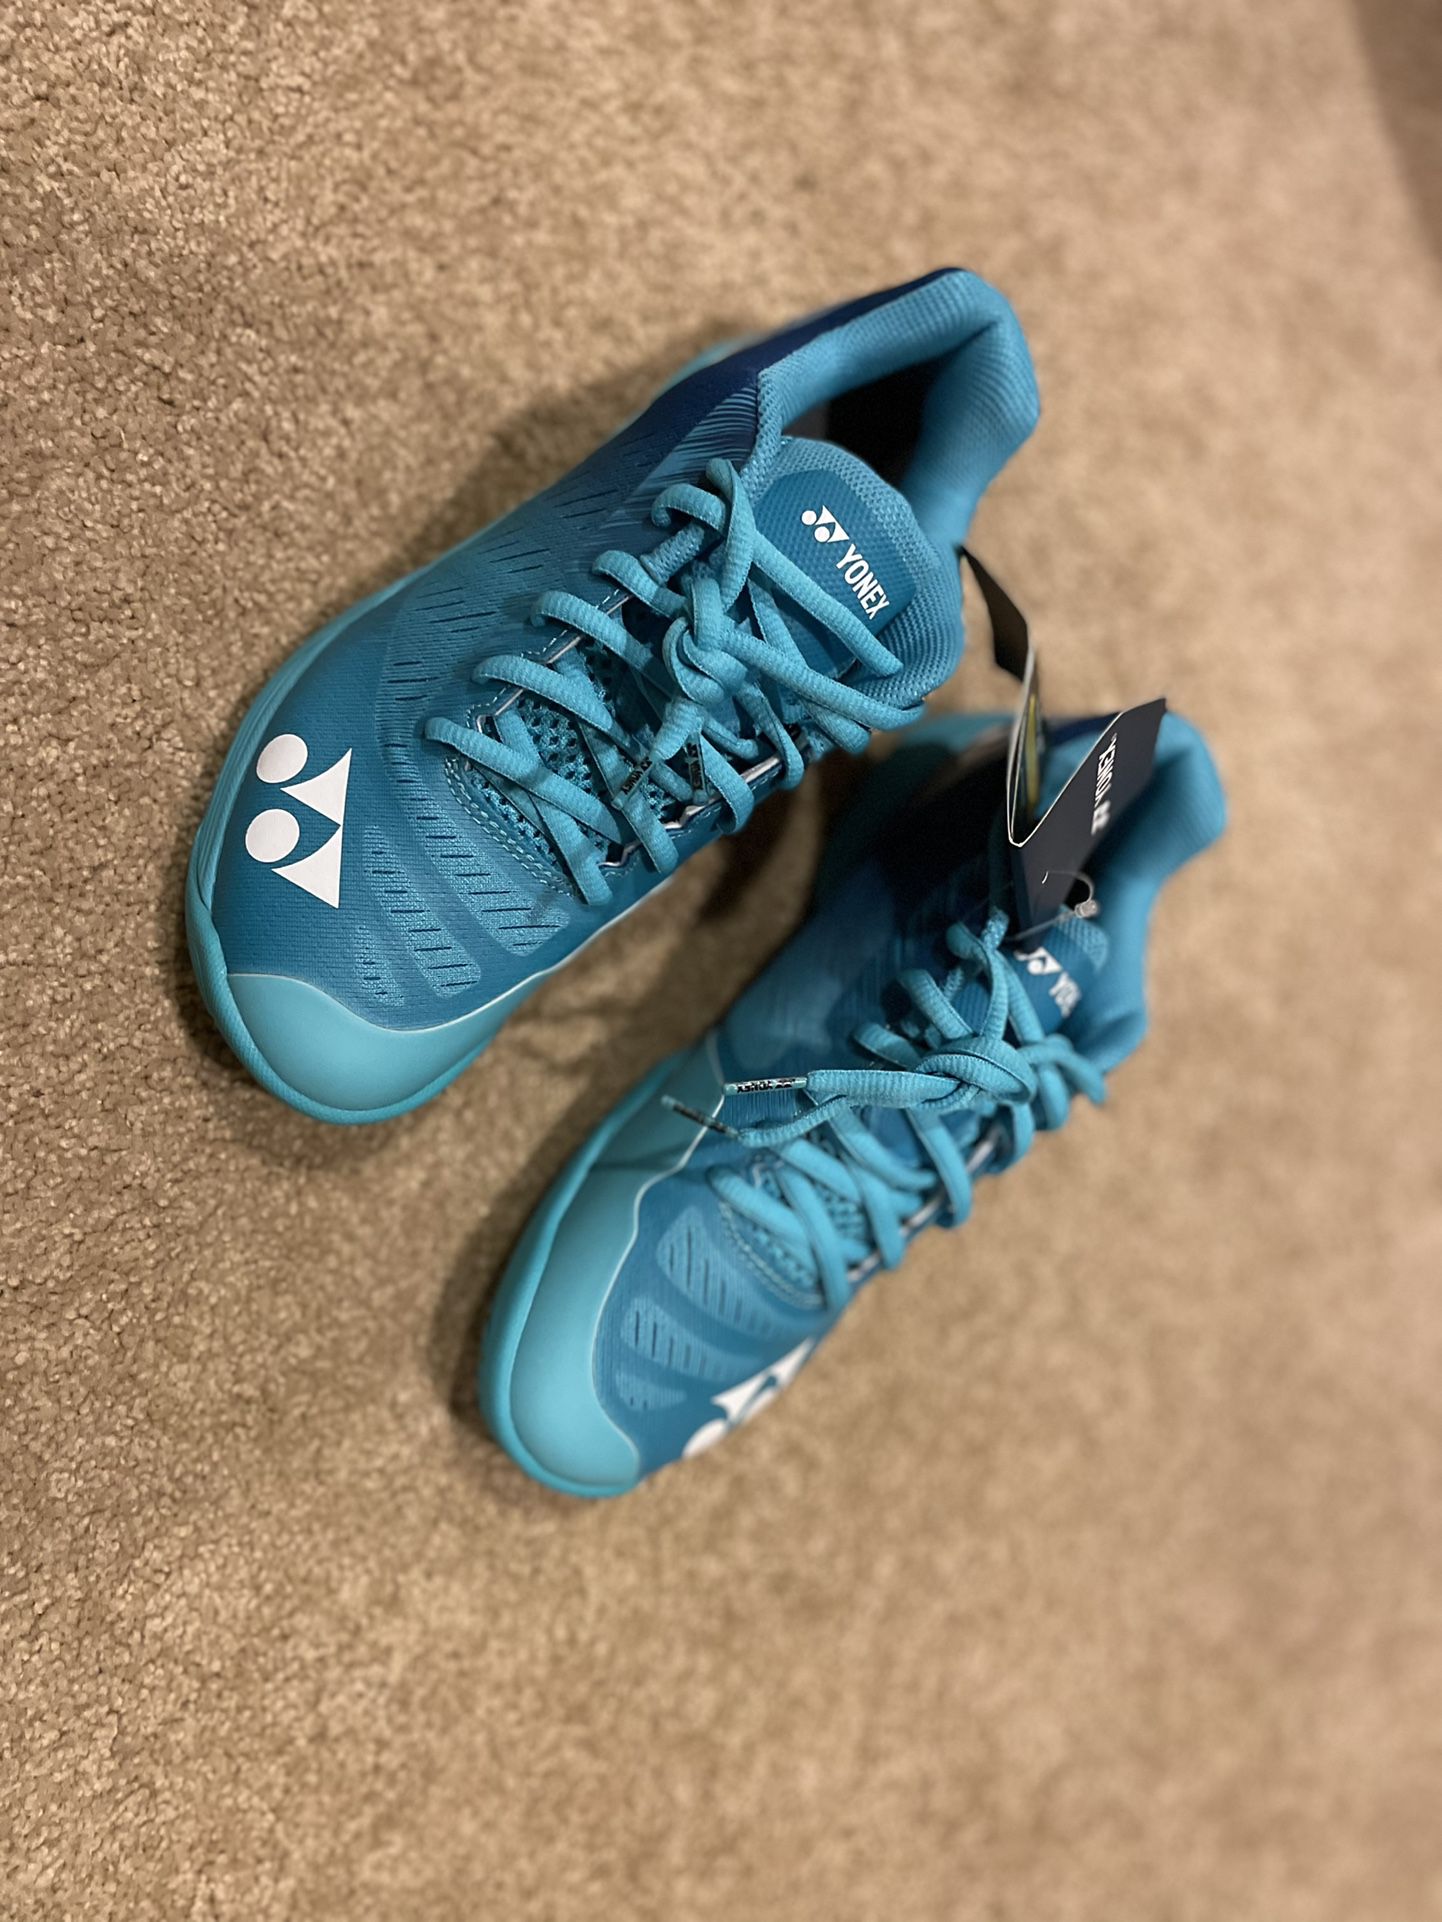 New Yonex Aerus Z women badminton shoes size 8